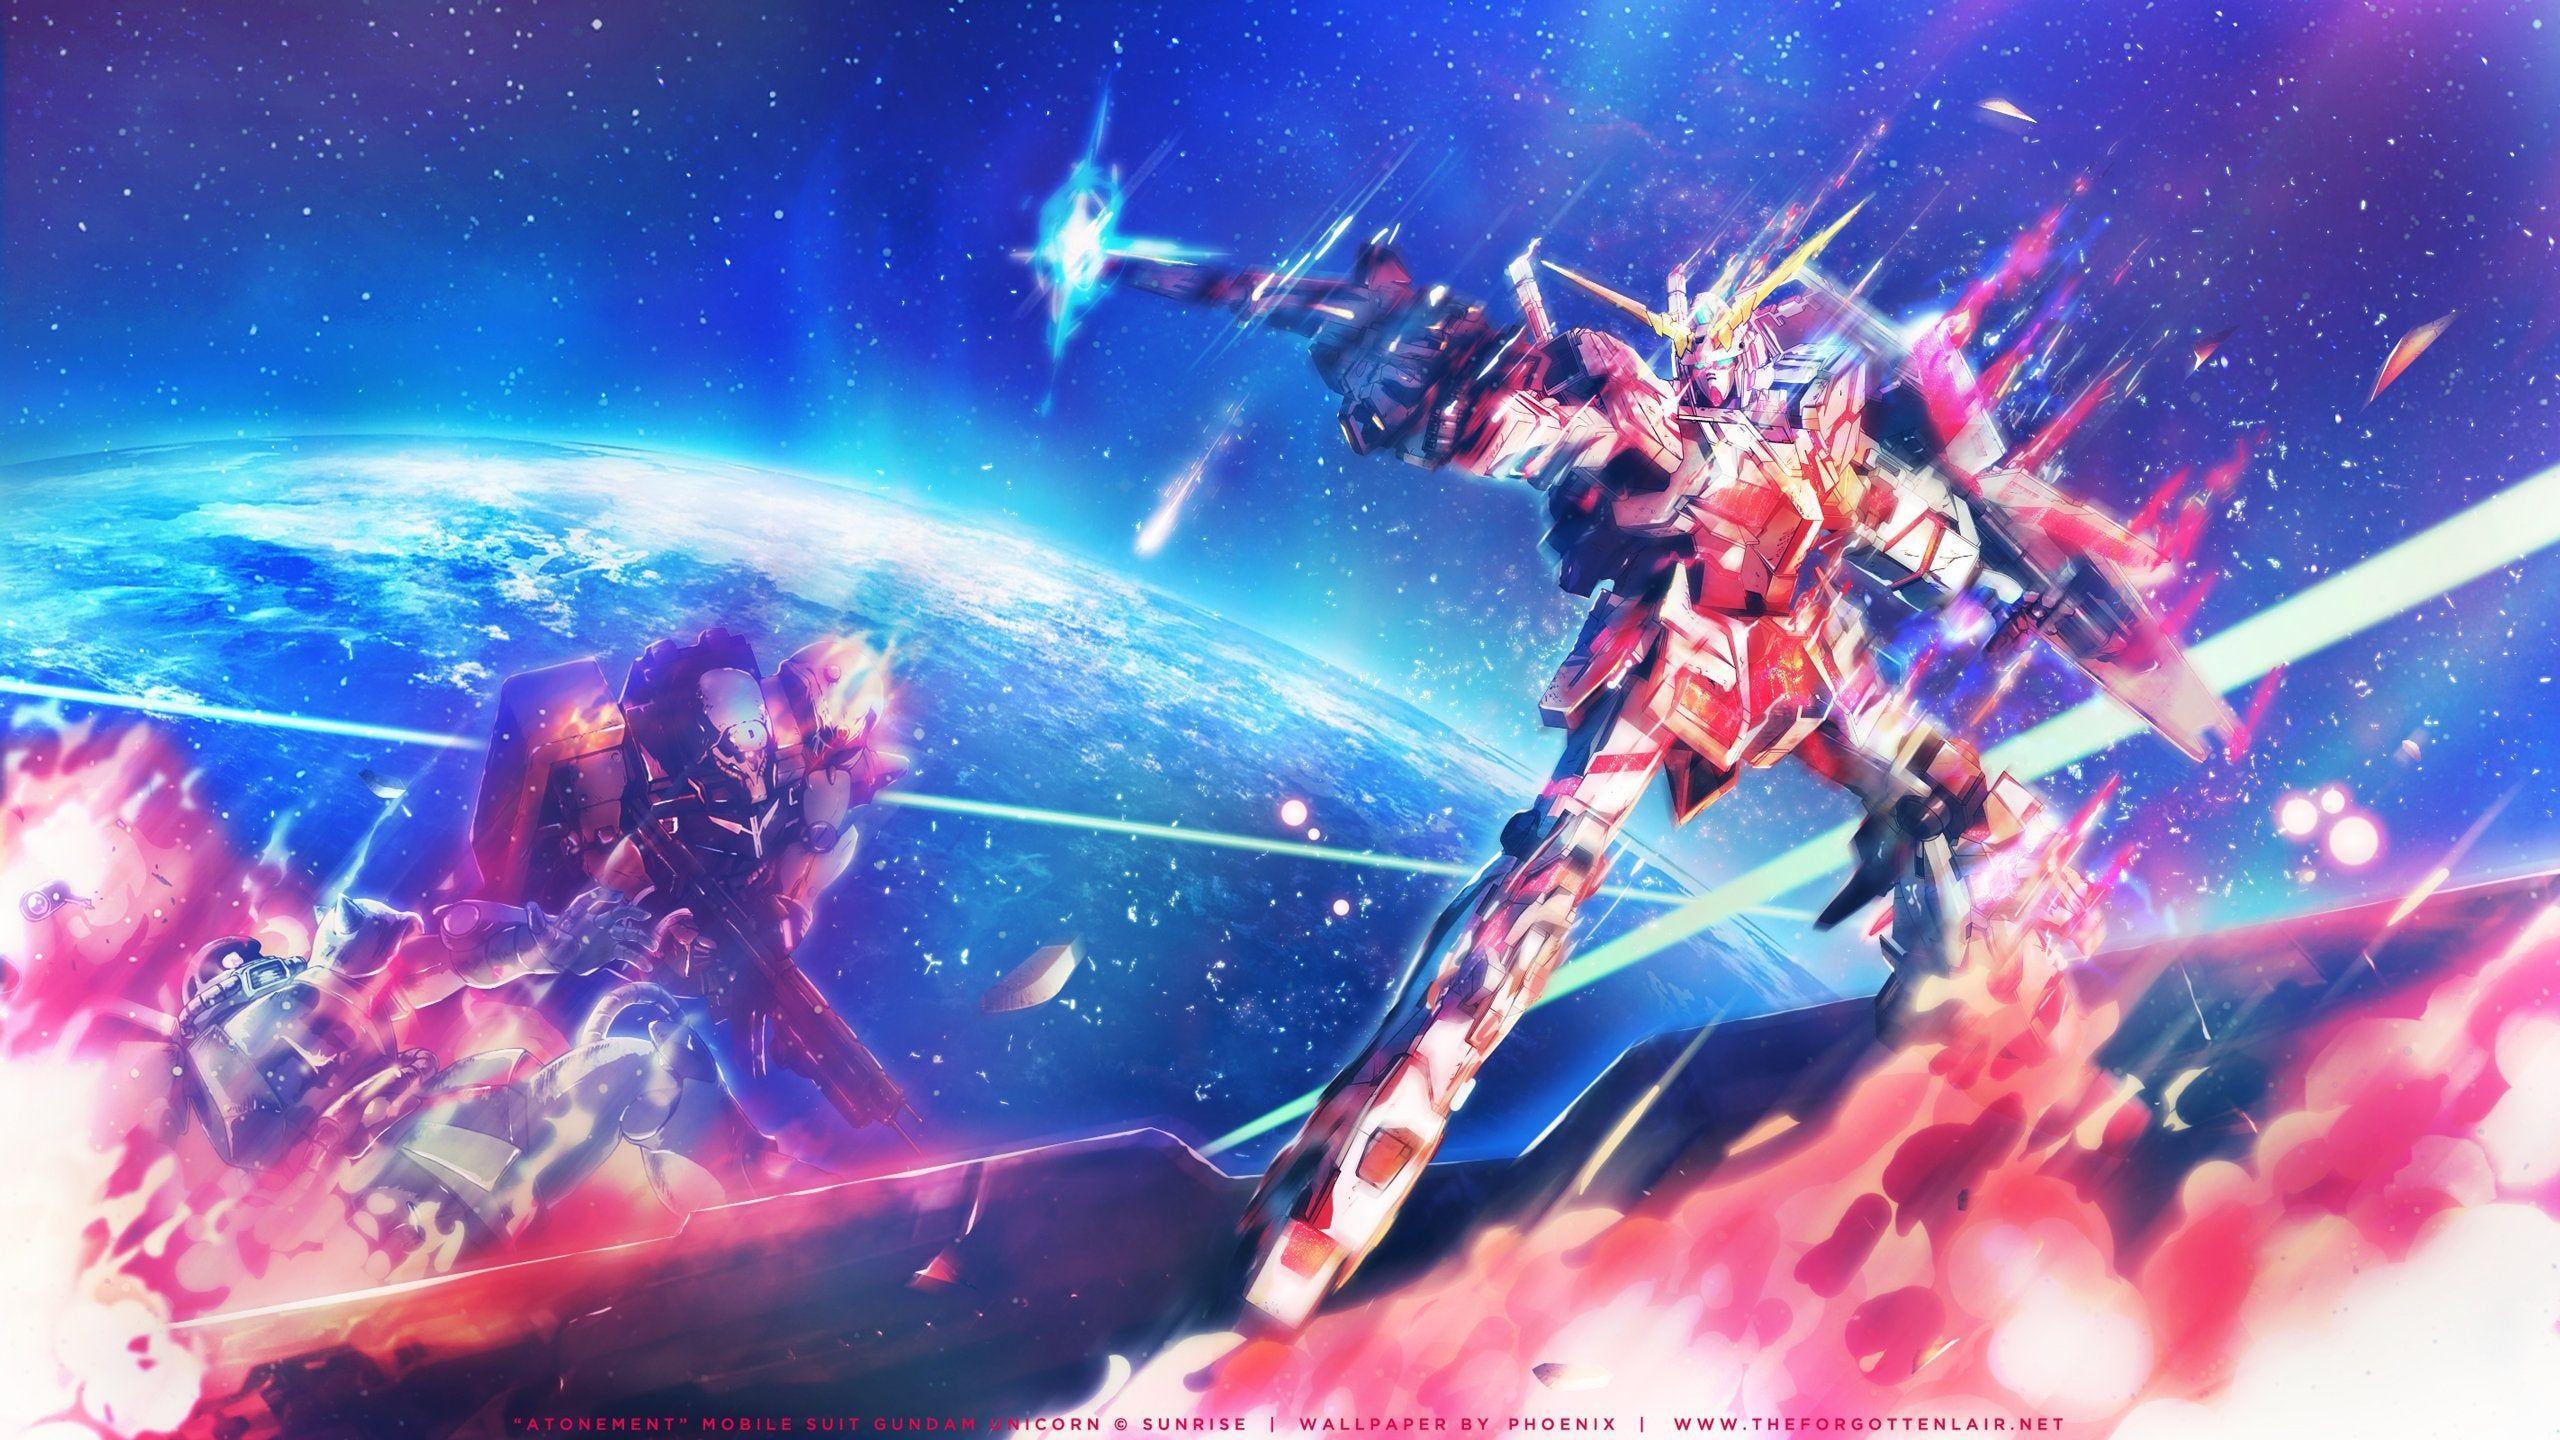 2560x1440 Hình nền Unicorn Gundam tôi vừa hoàn thành: Gundam